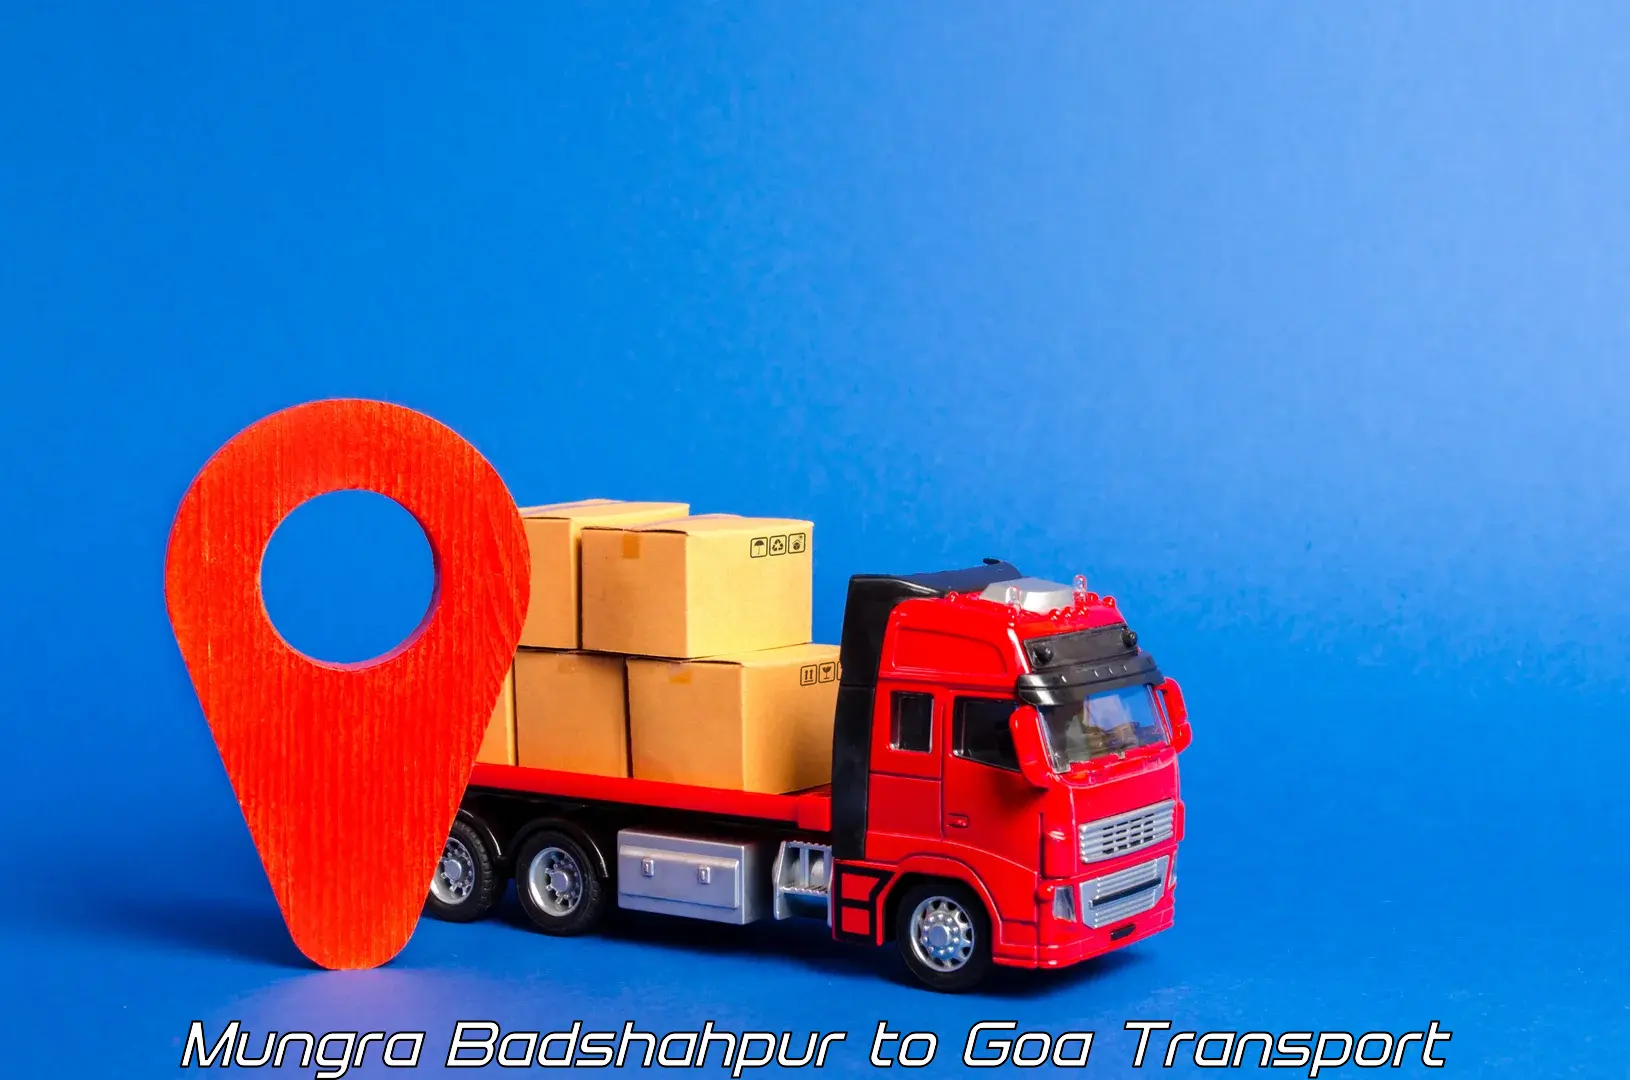 Transport in sharing Mungra Badshahpur to Margao